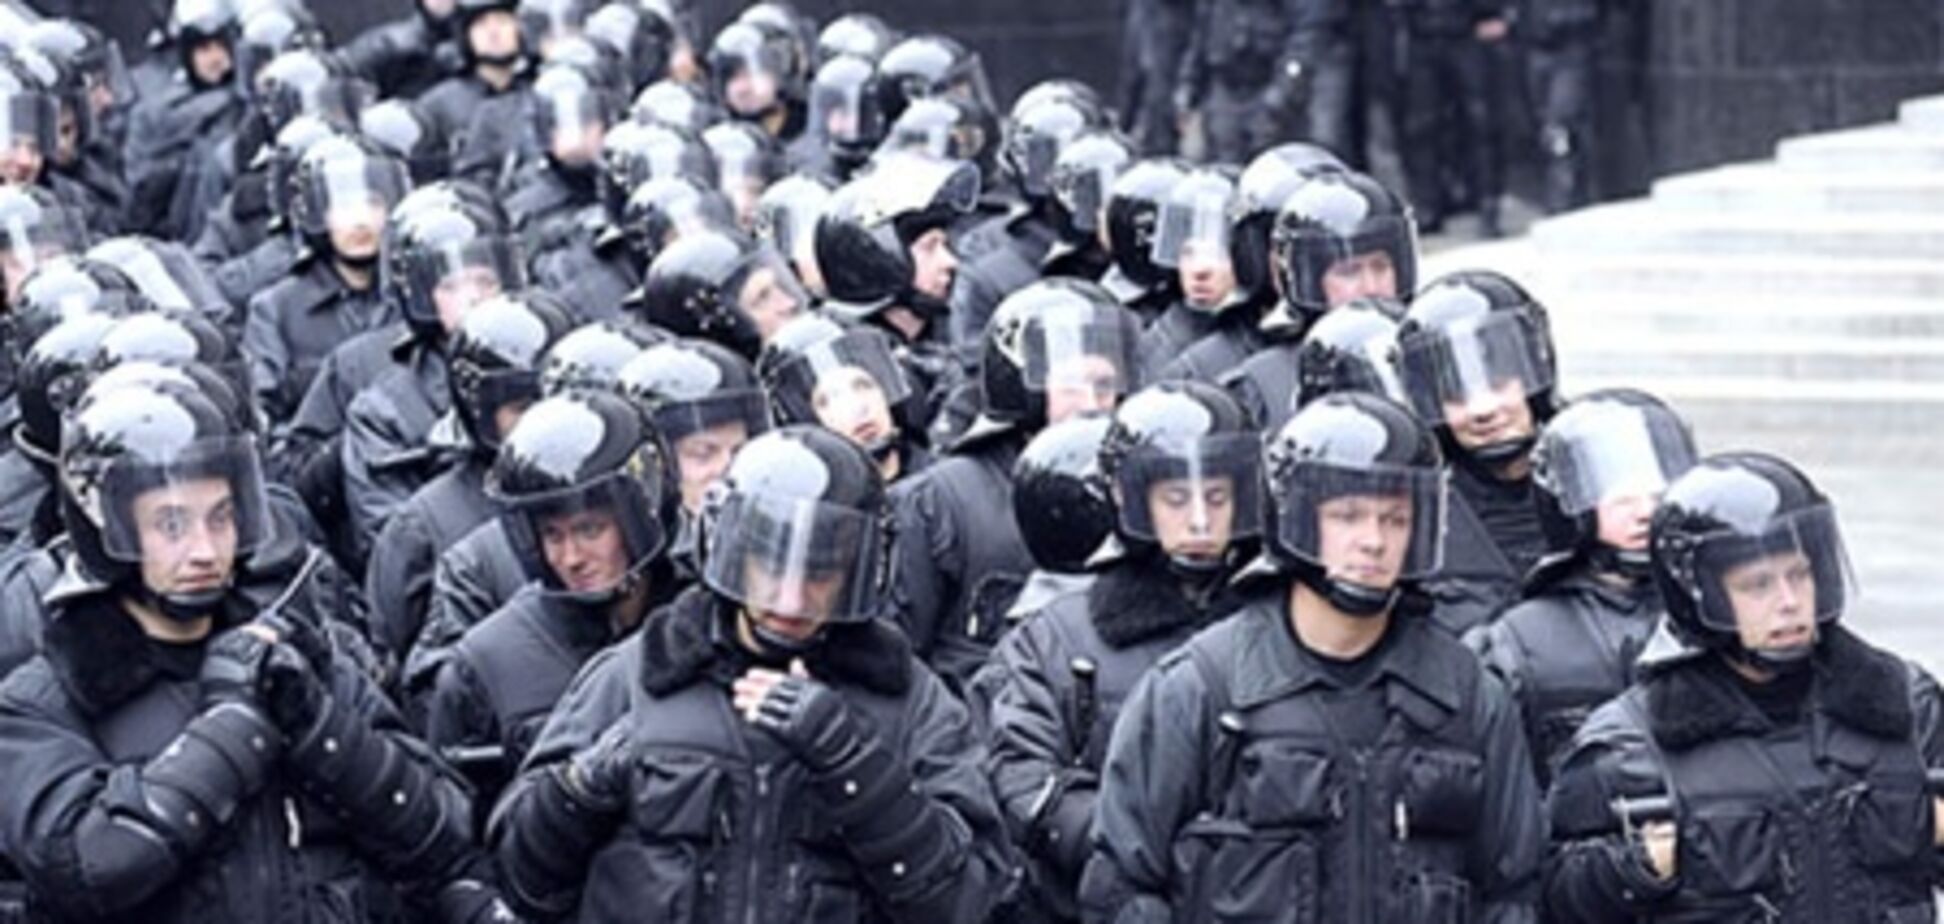 У міліції кажуть, що чорнобильцям лише пояснили, що вони порушують порядок